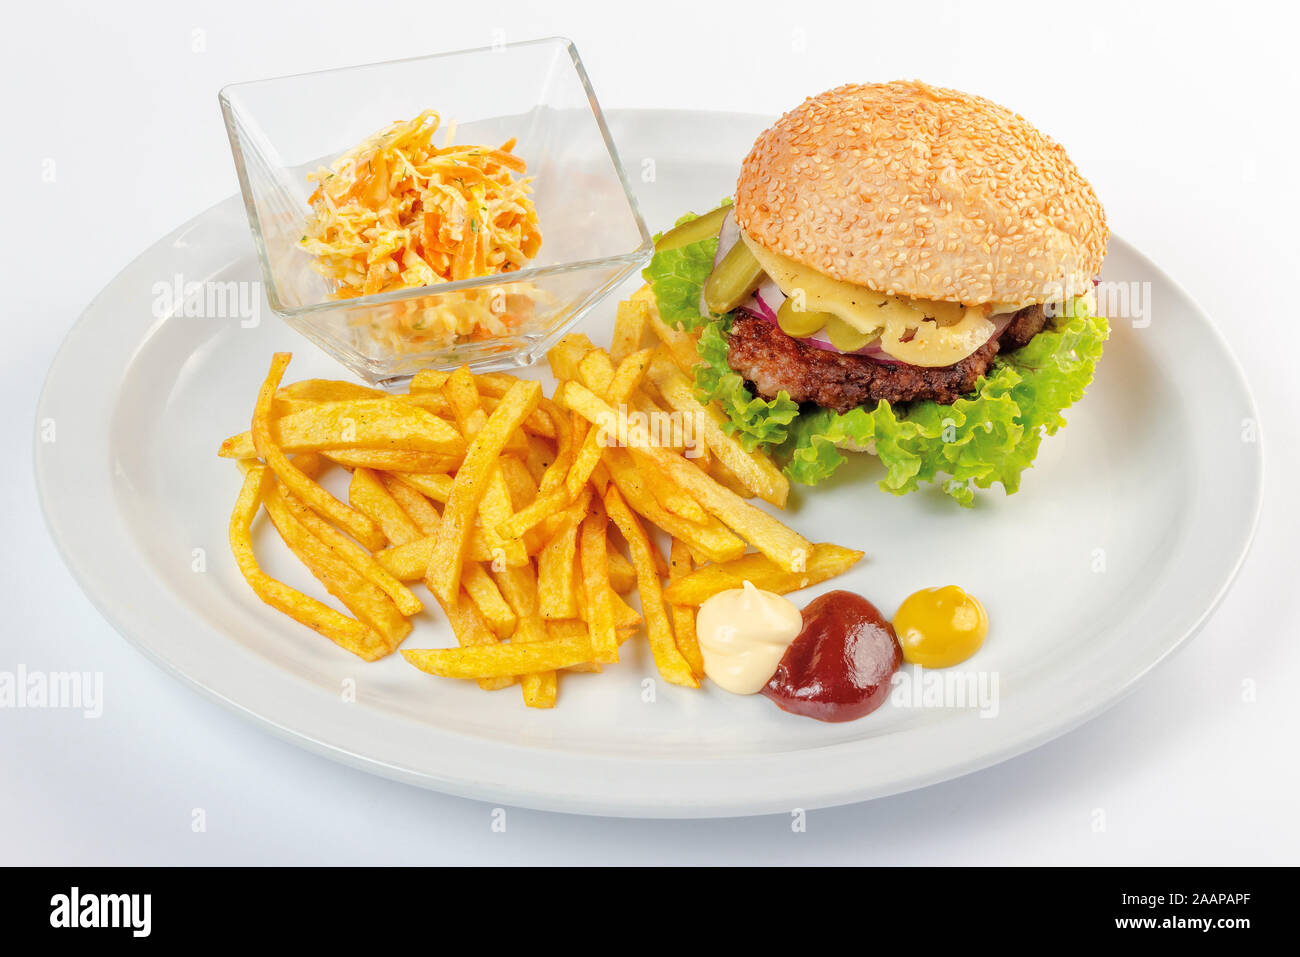 Il fast food menu. hamburger, patatine fritte e insalata. burger con carne di manzo gioco formaggio, cipolla e sottaceti maionese ketchup senape sulla piastra bianca. hea Foto Stock